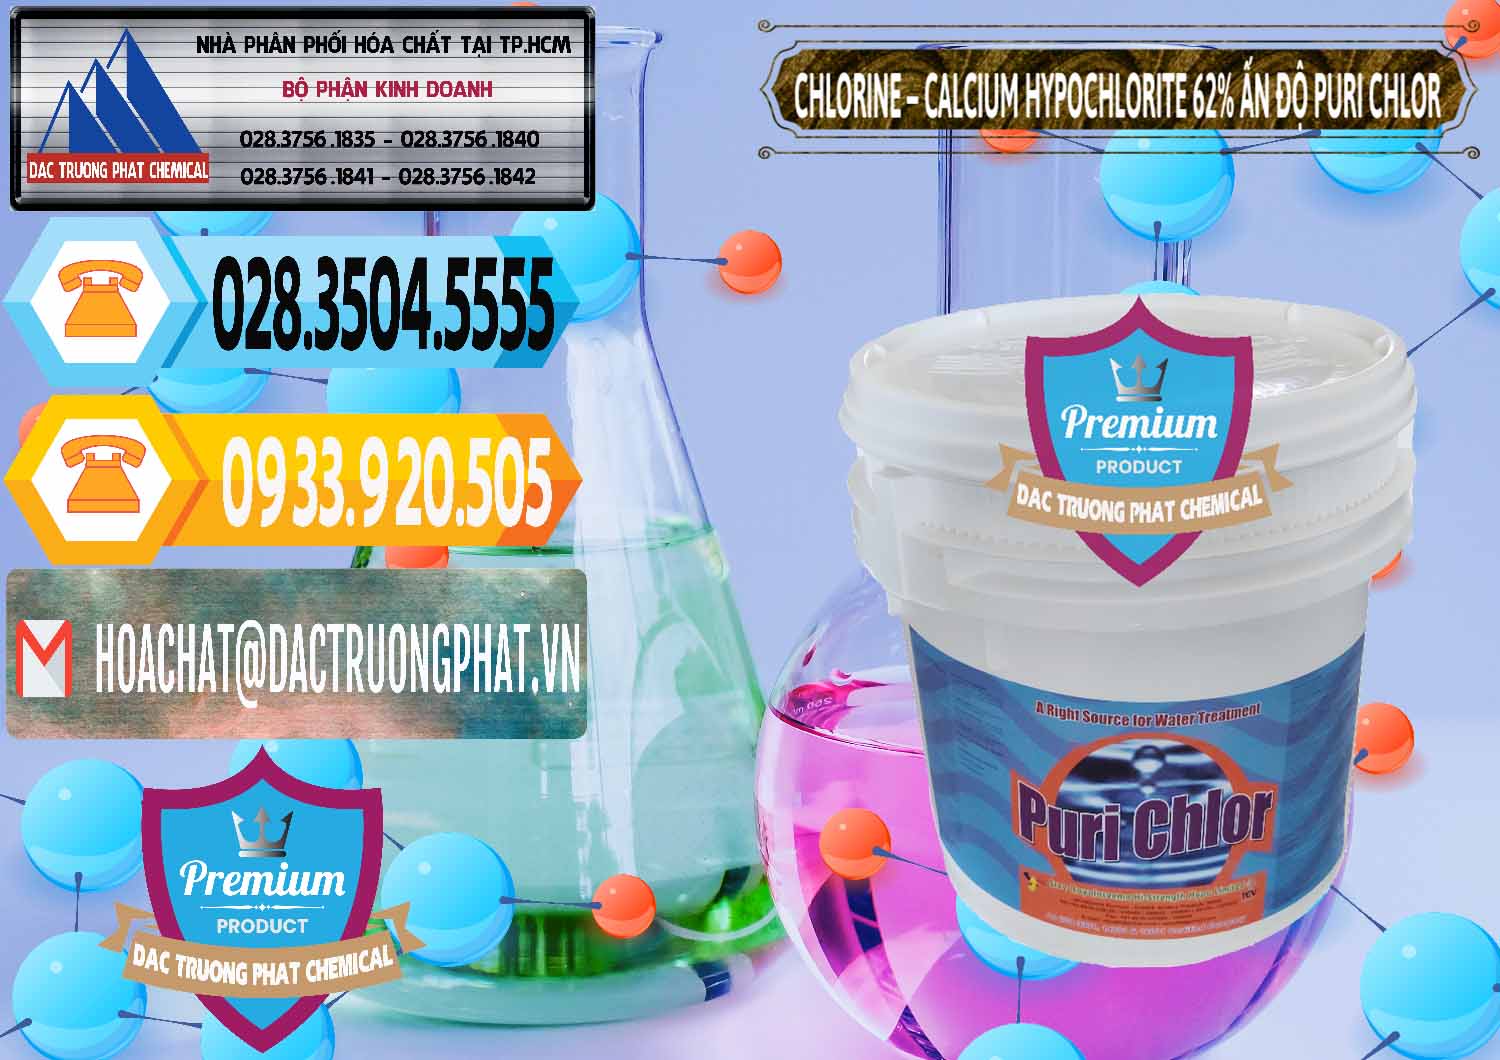 Công ty cung ứng _ bán Chlorine – Clorin 62% Puri Chlo Ấn Độ India - 0052 - Công ty chuyên bán và cung cấp hóa chất tại TP.HCM - hoachattayrua.net